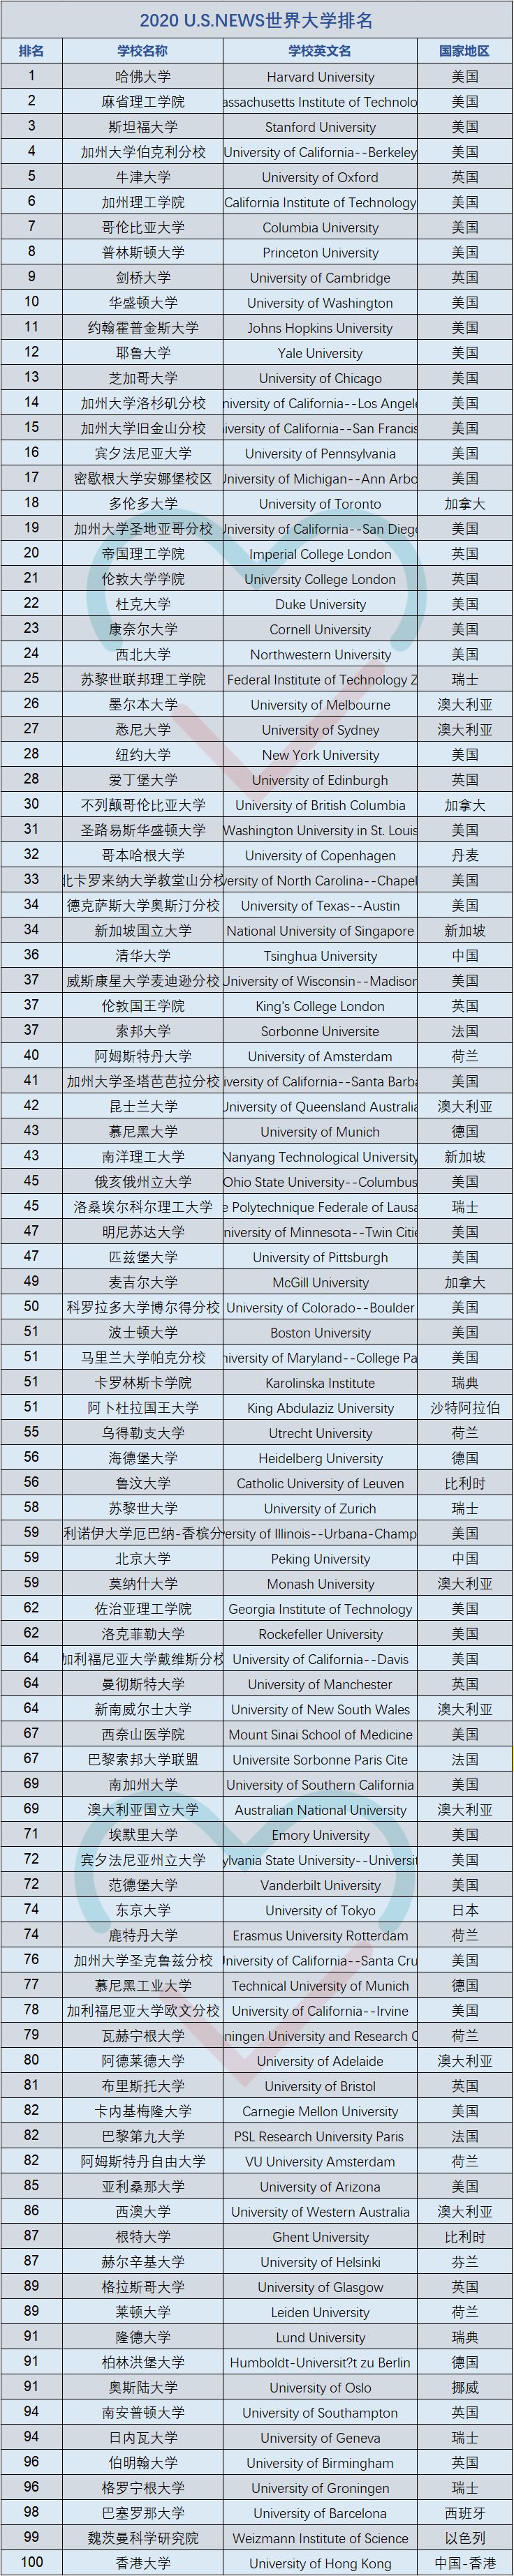 软科世界大学学术排名